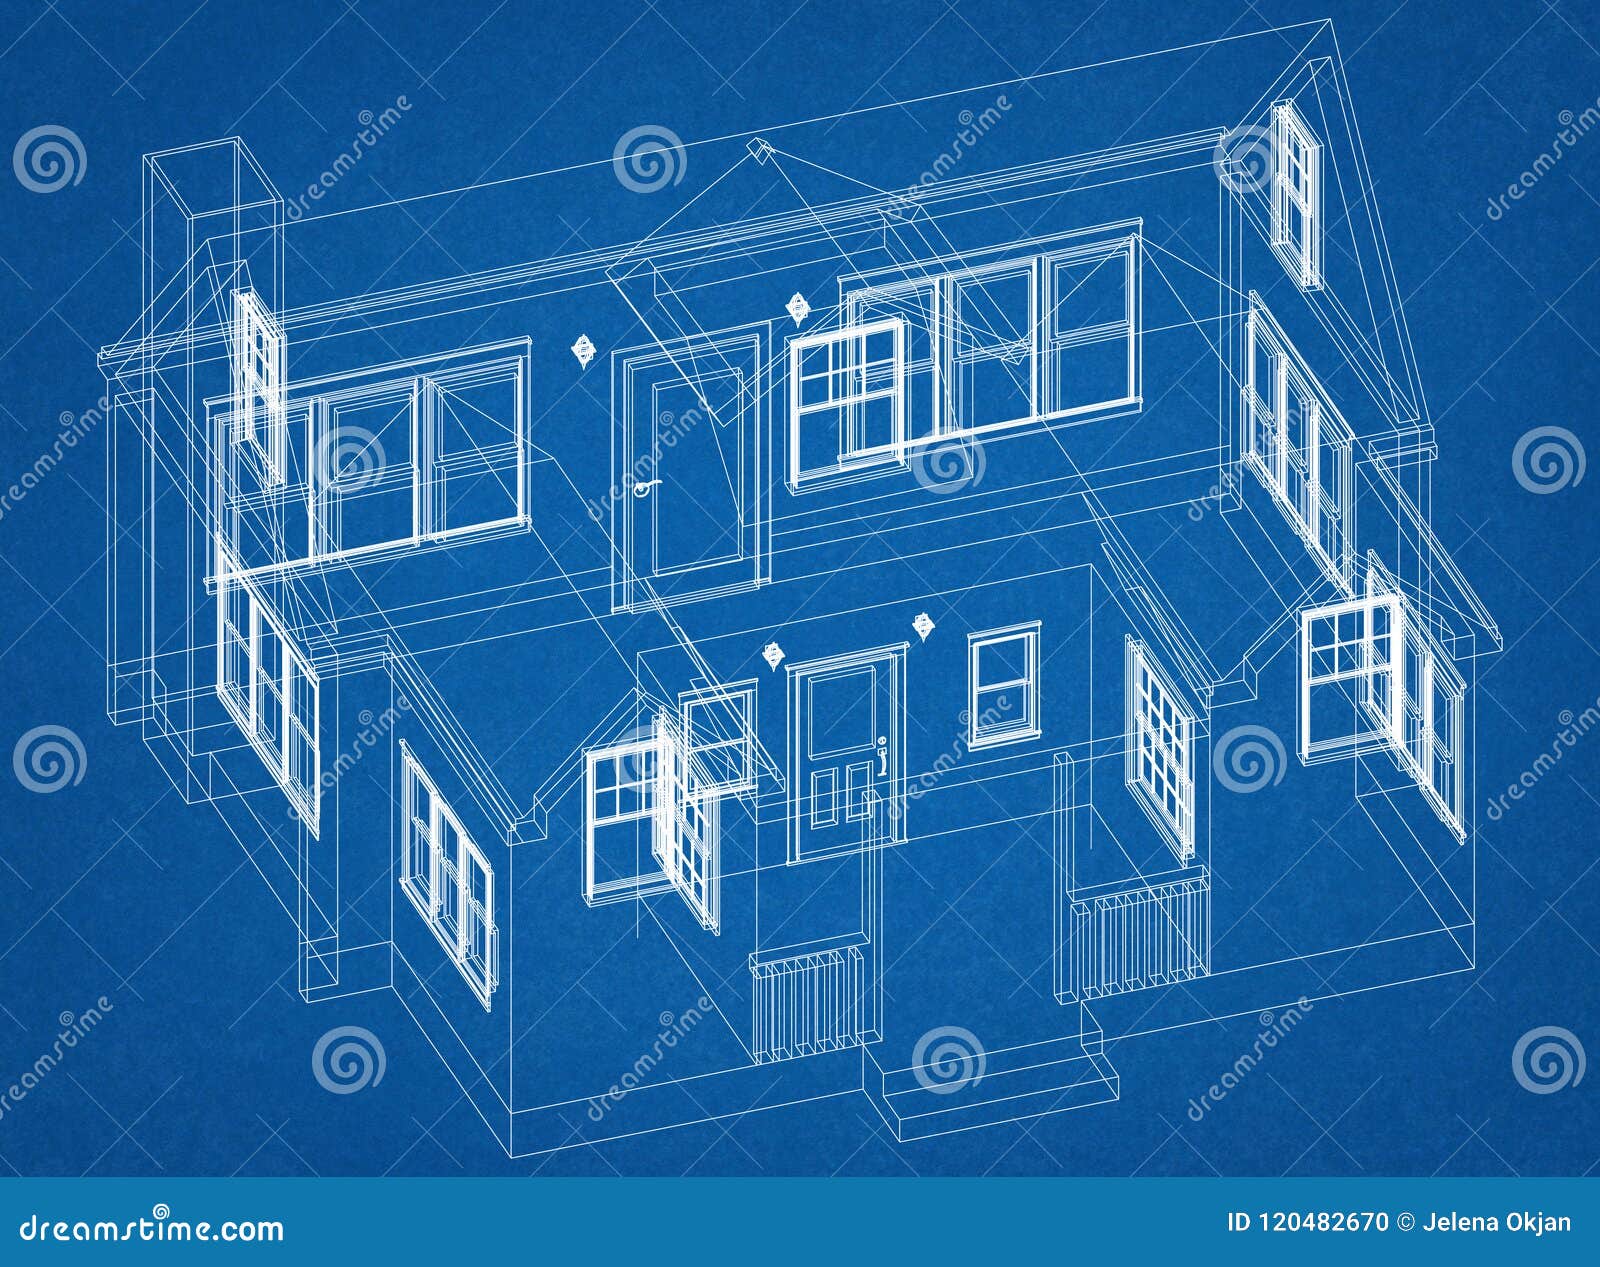  House  Design  Architect  Blueprint  Stock Photo Image of 